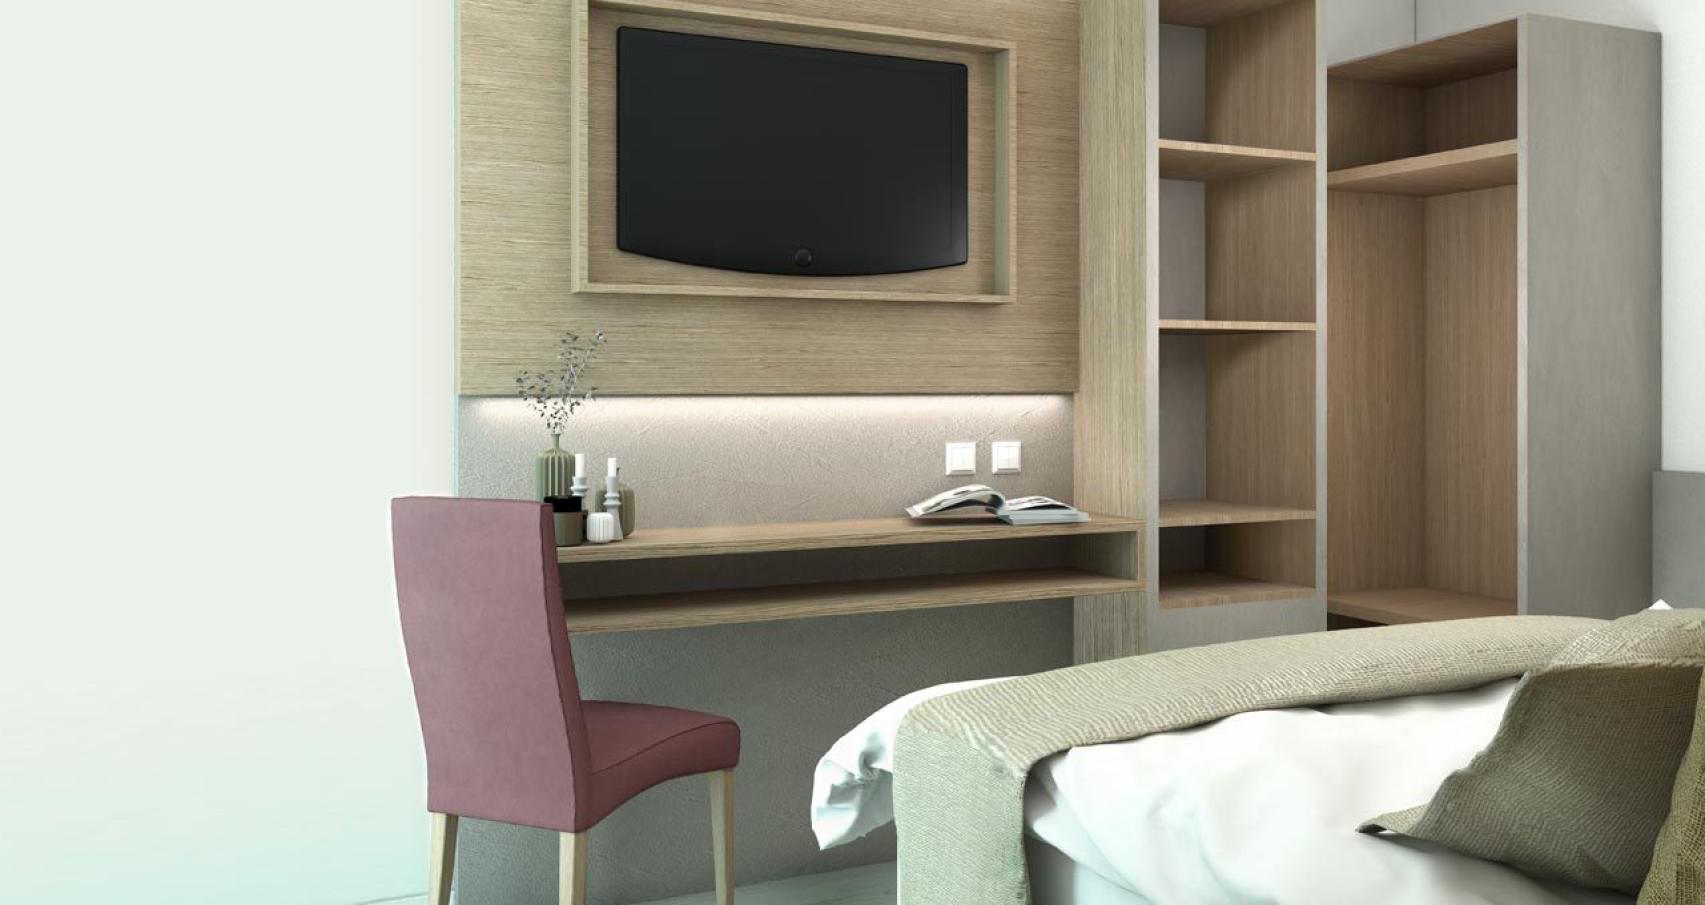 Camera moderna con TV, scrivania, sedia e scaffali in legno.